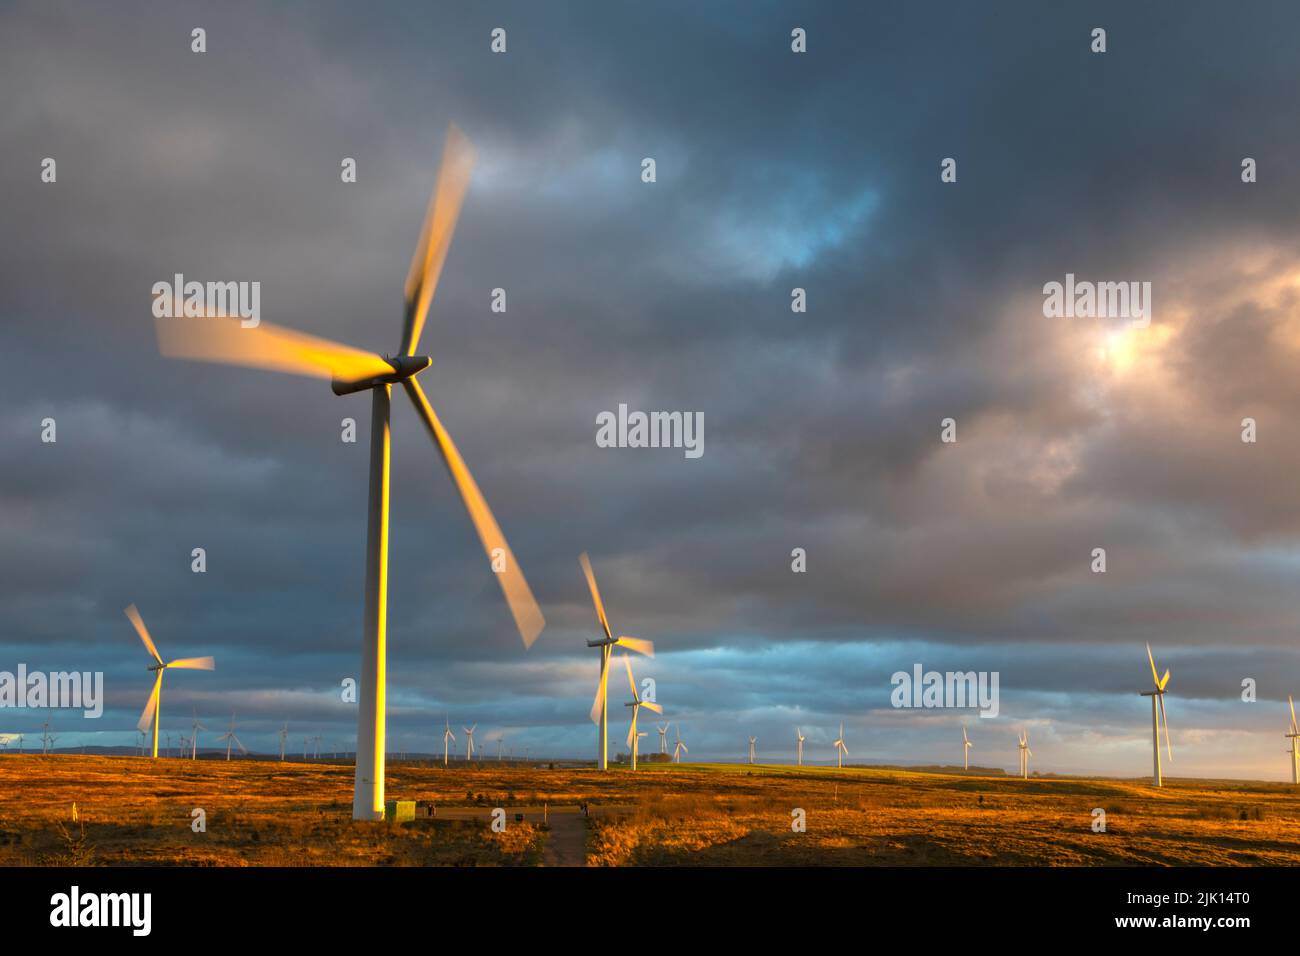 Turbine eoliche al tramonto con cielo tempestoso, Whitelee Windfarm, East Renfrewshire, Scozia, Regno Unito, Europa Foto Stock